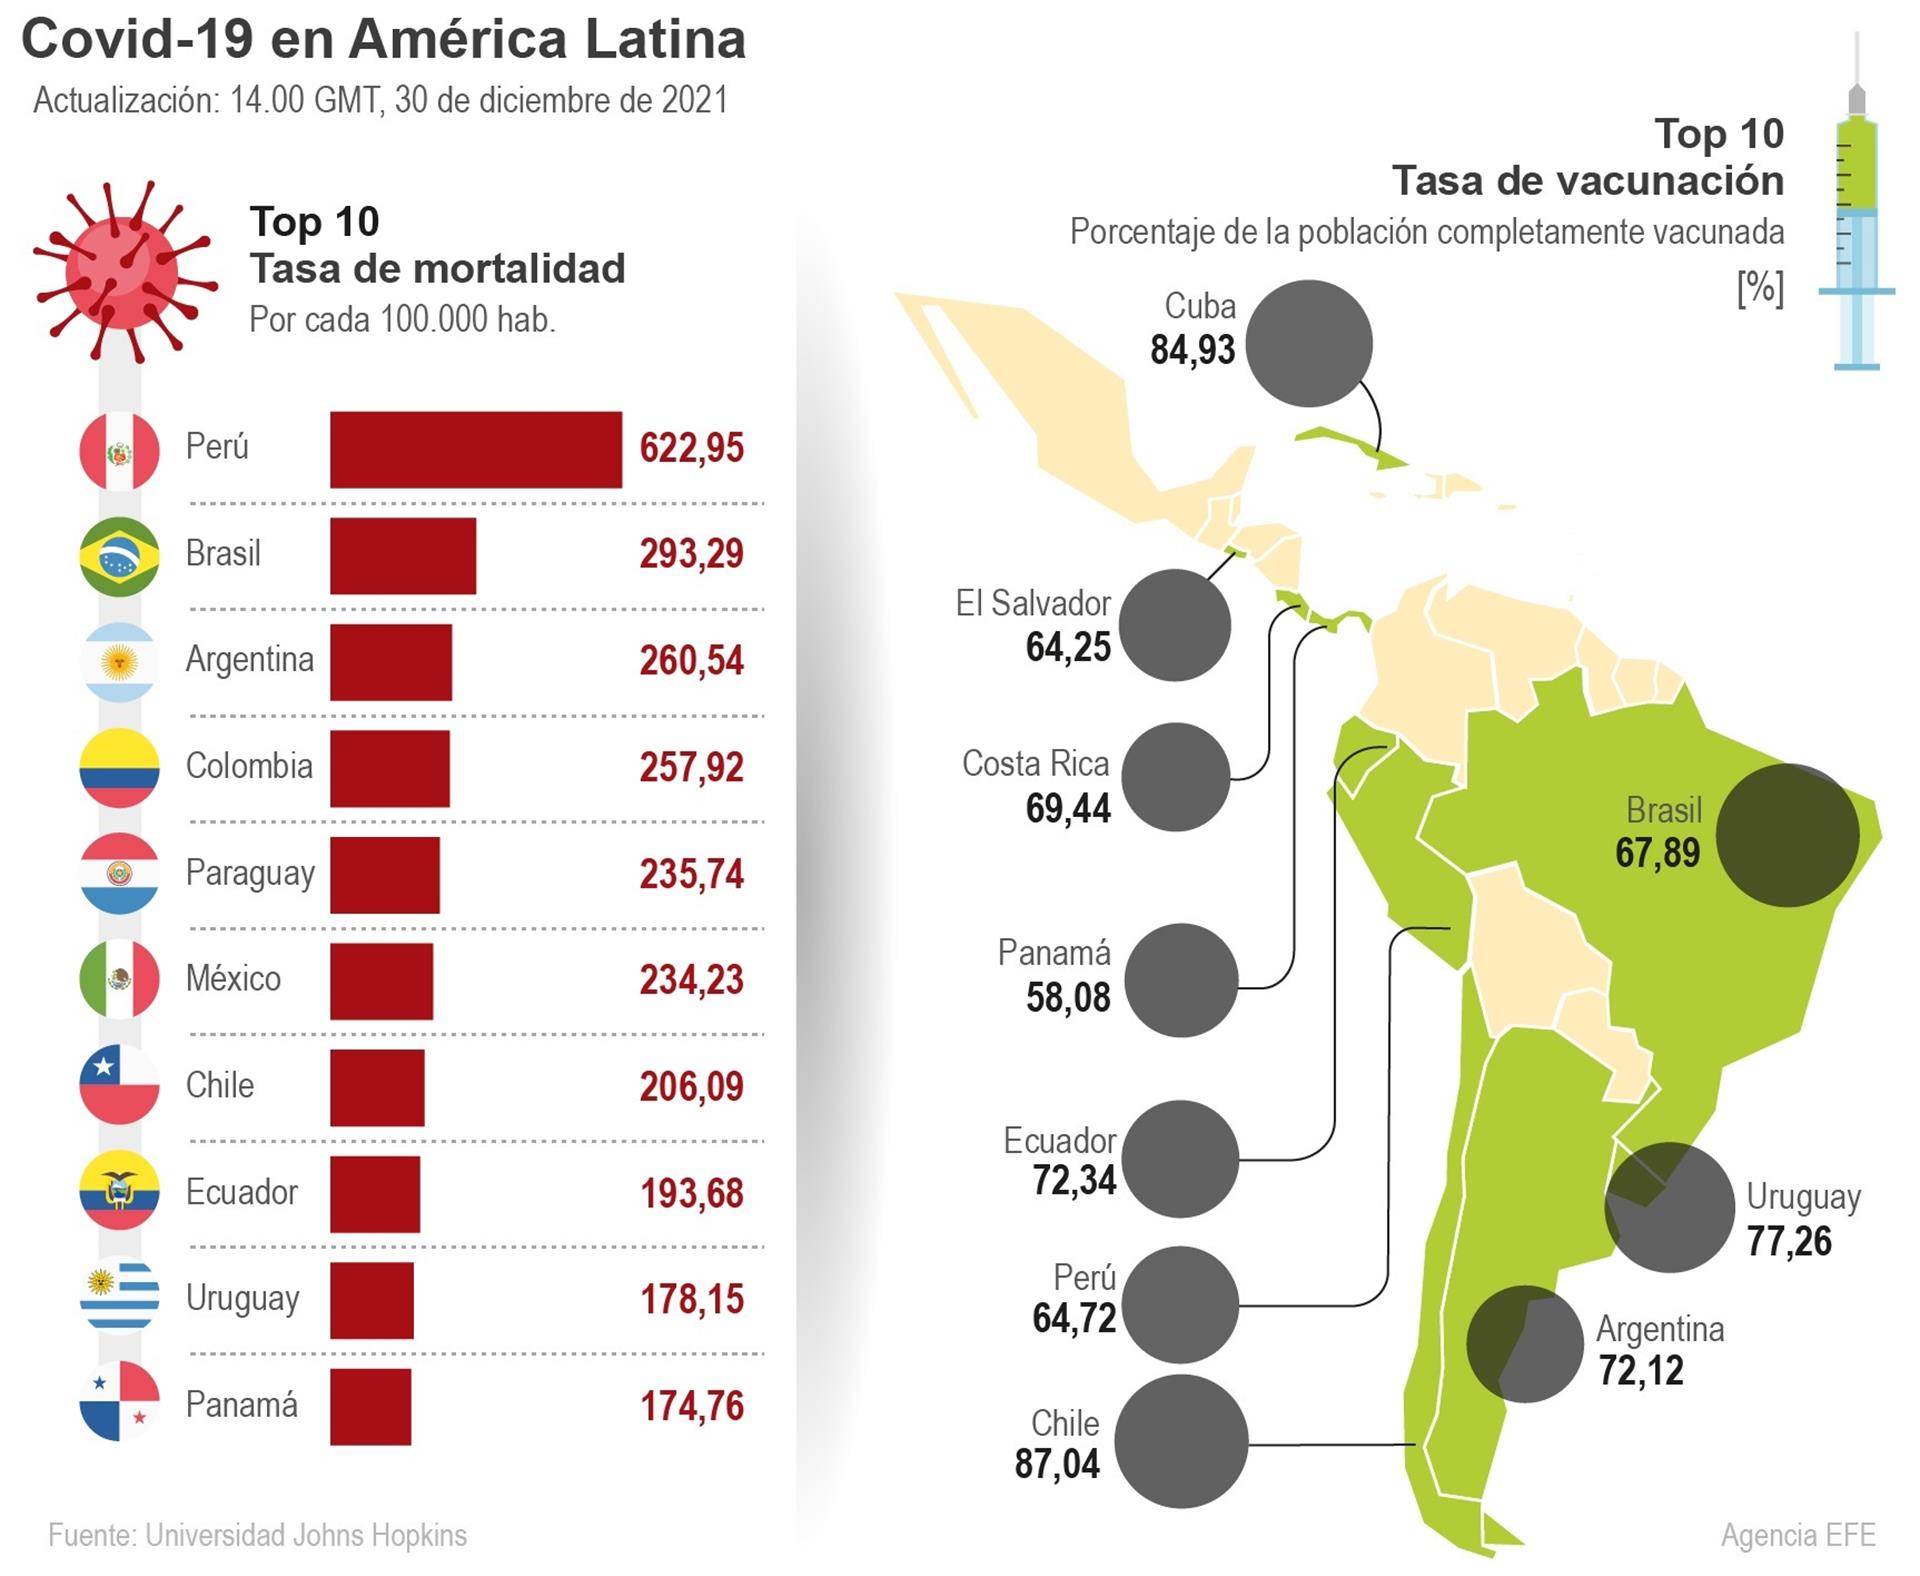 Infografía del top 10 de mortalidad y tasa de vacunación en los países de Latinoamérica.